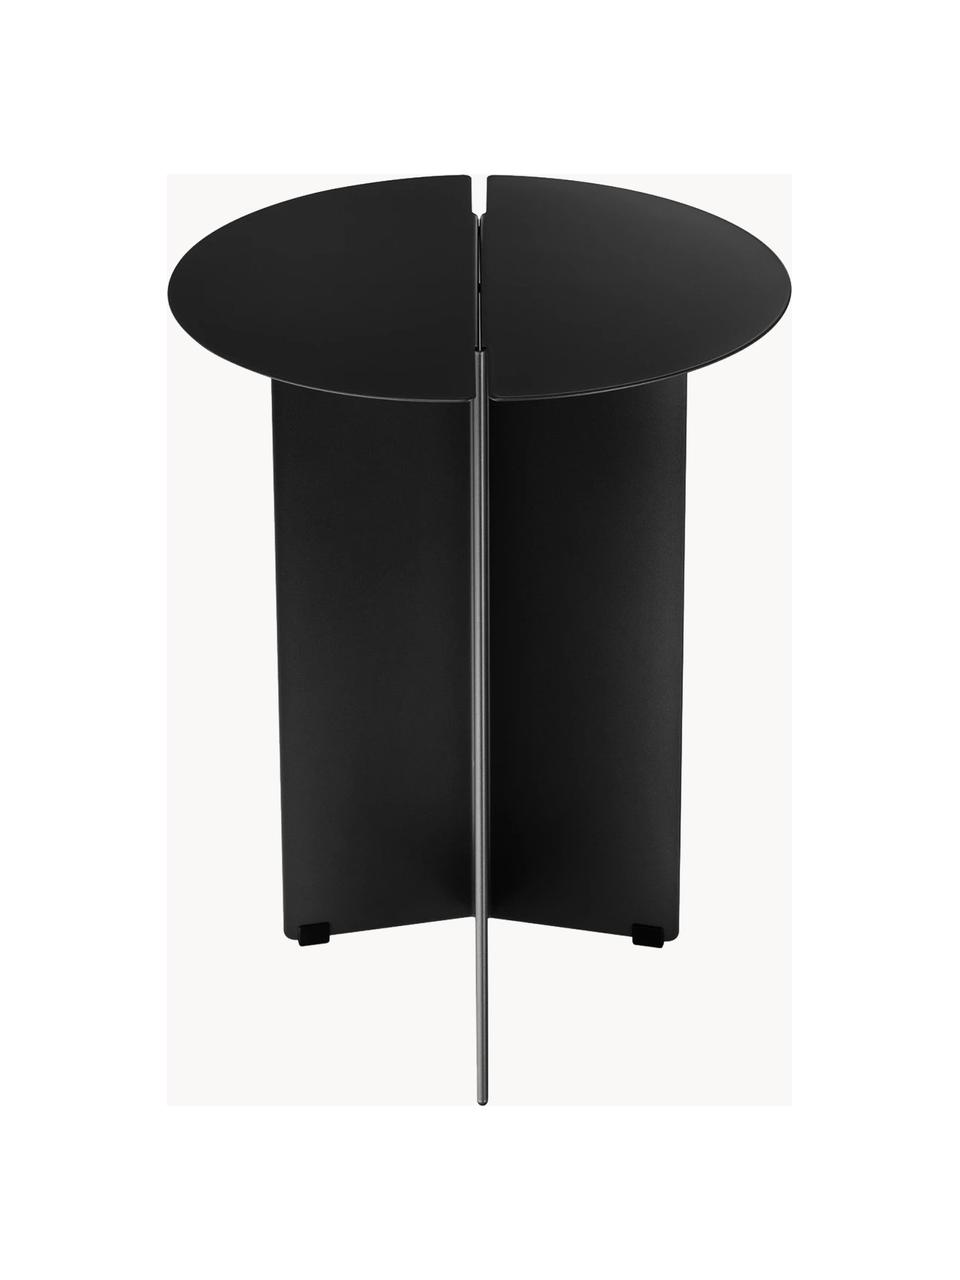 Okrągły stolik pomocniczy Oru, Stal szlachetna malowana proszkowo, Czarny, Ø 35 x W 48 cm